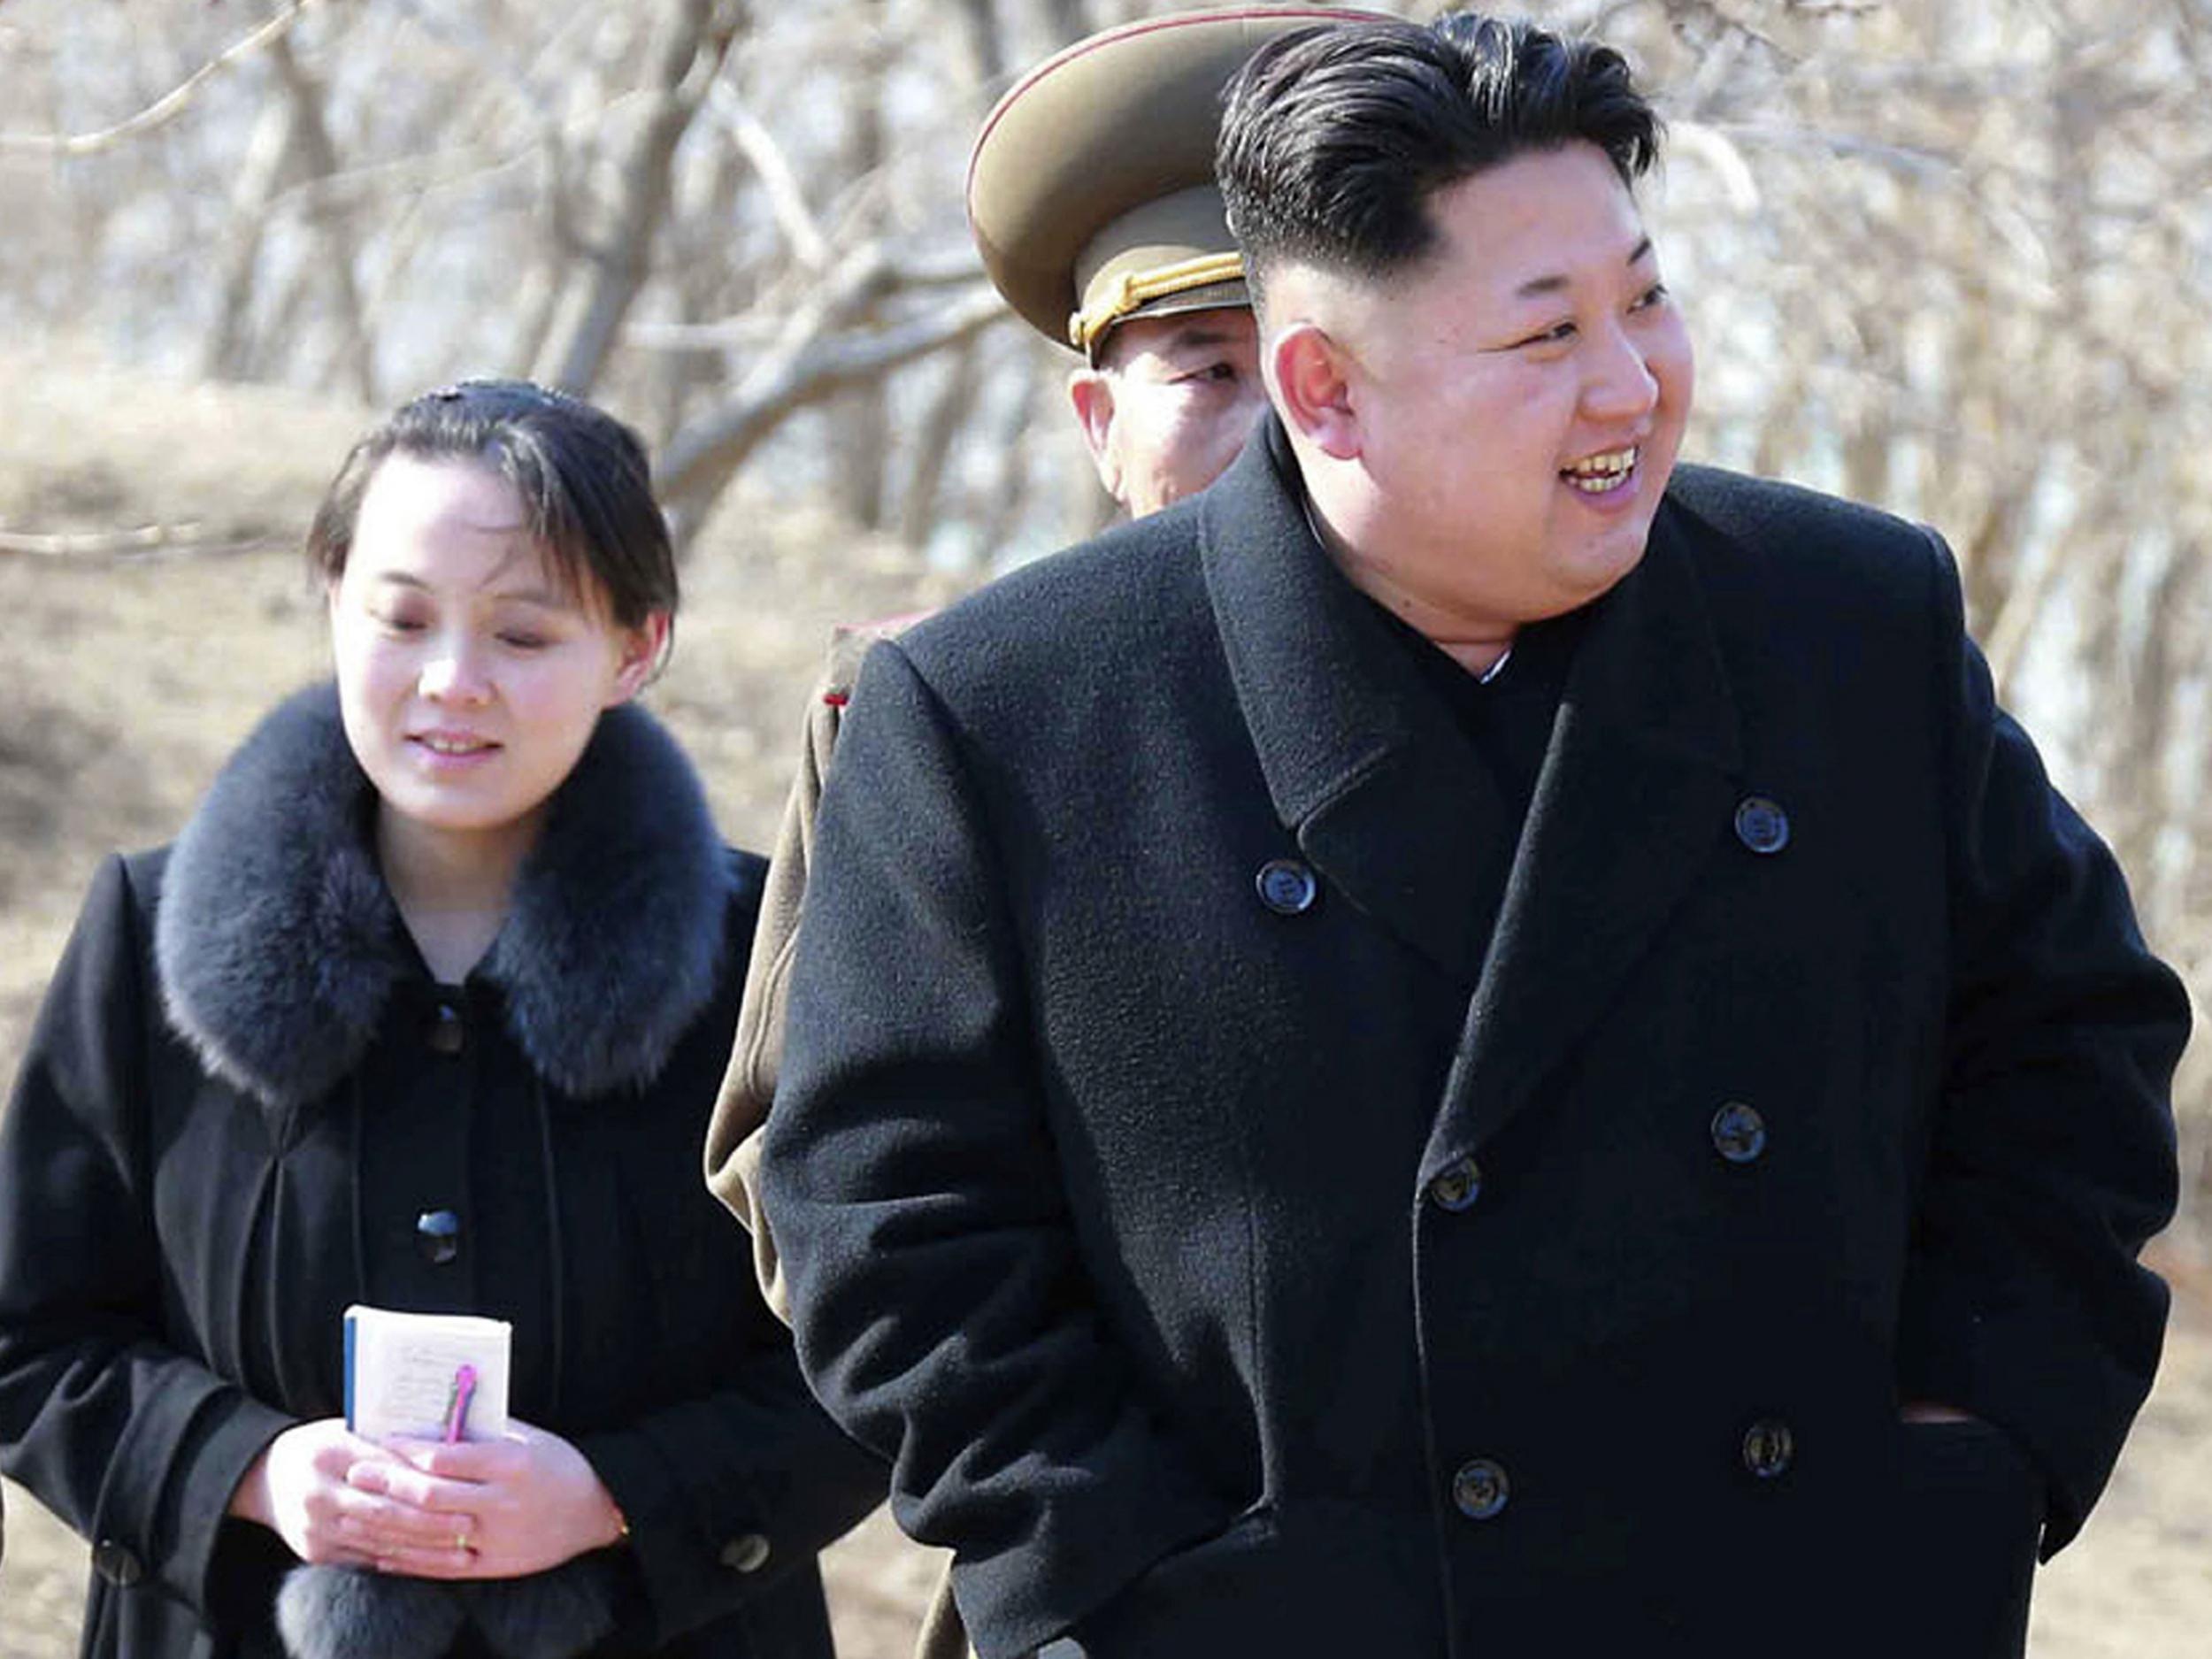 North Korean leader Kim Jong-un and his sister Kim Yo-jong